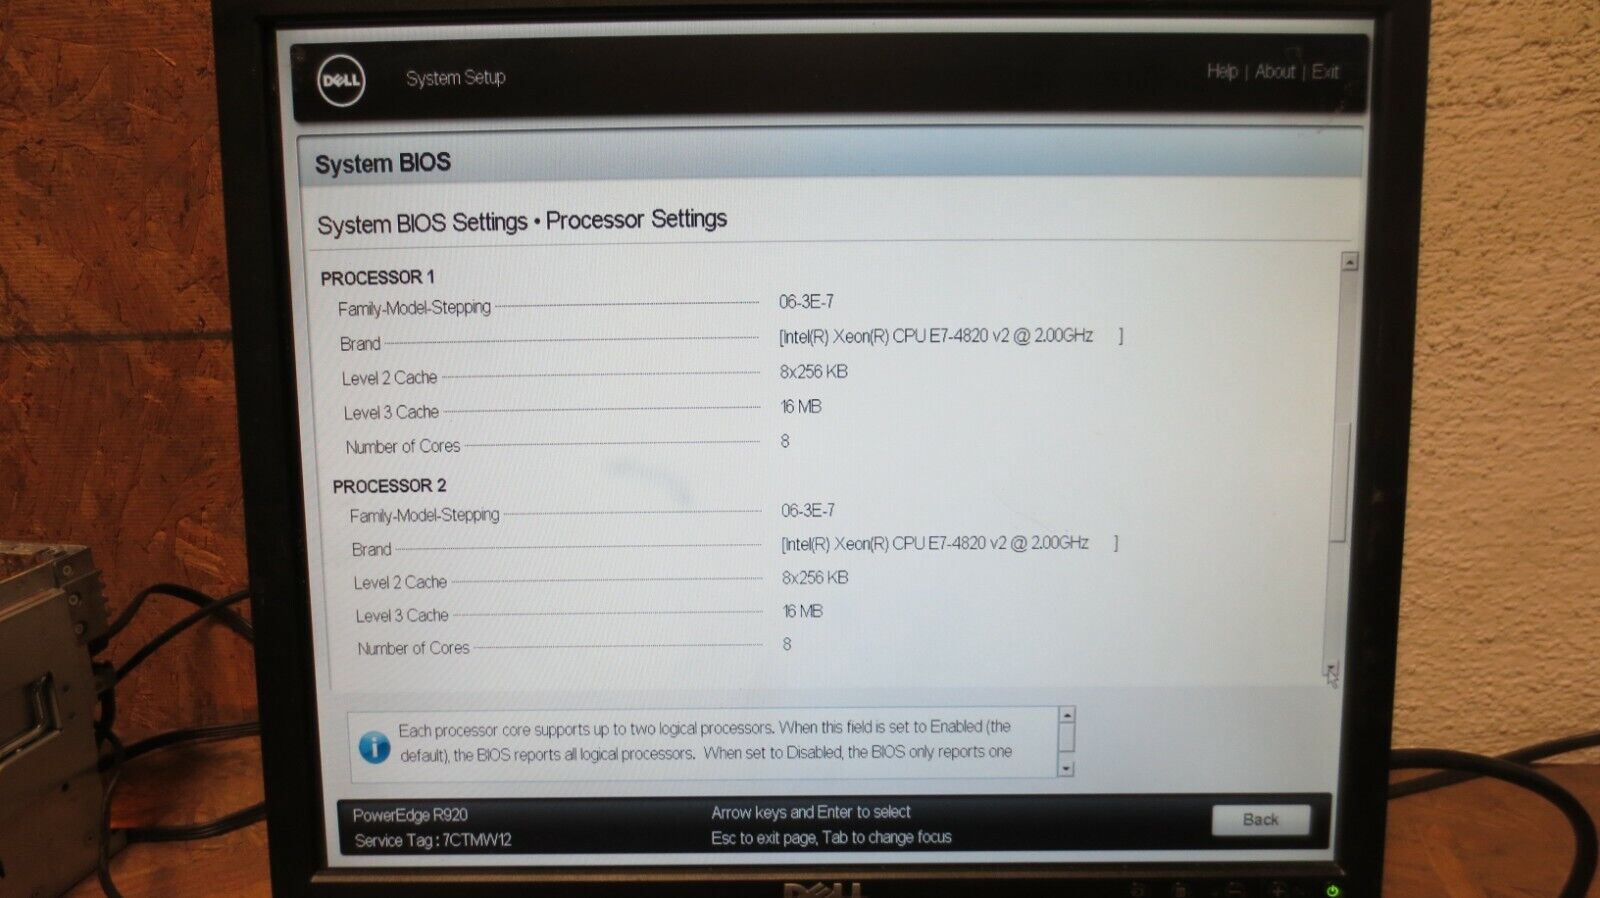 Dell PowerEdge R920 - 2 x E7-4820 v2@ 2.00GHZ, RAM 32GB, H730P, iDRAC7, NO HDD